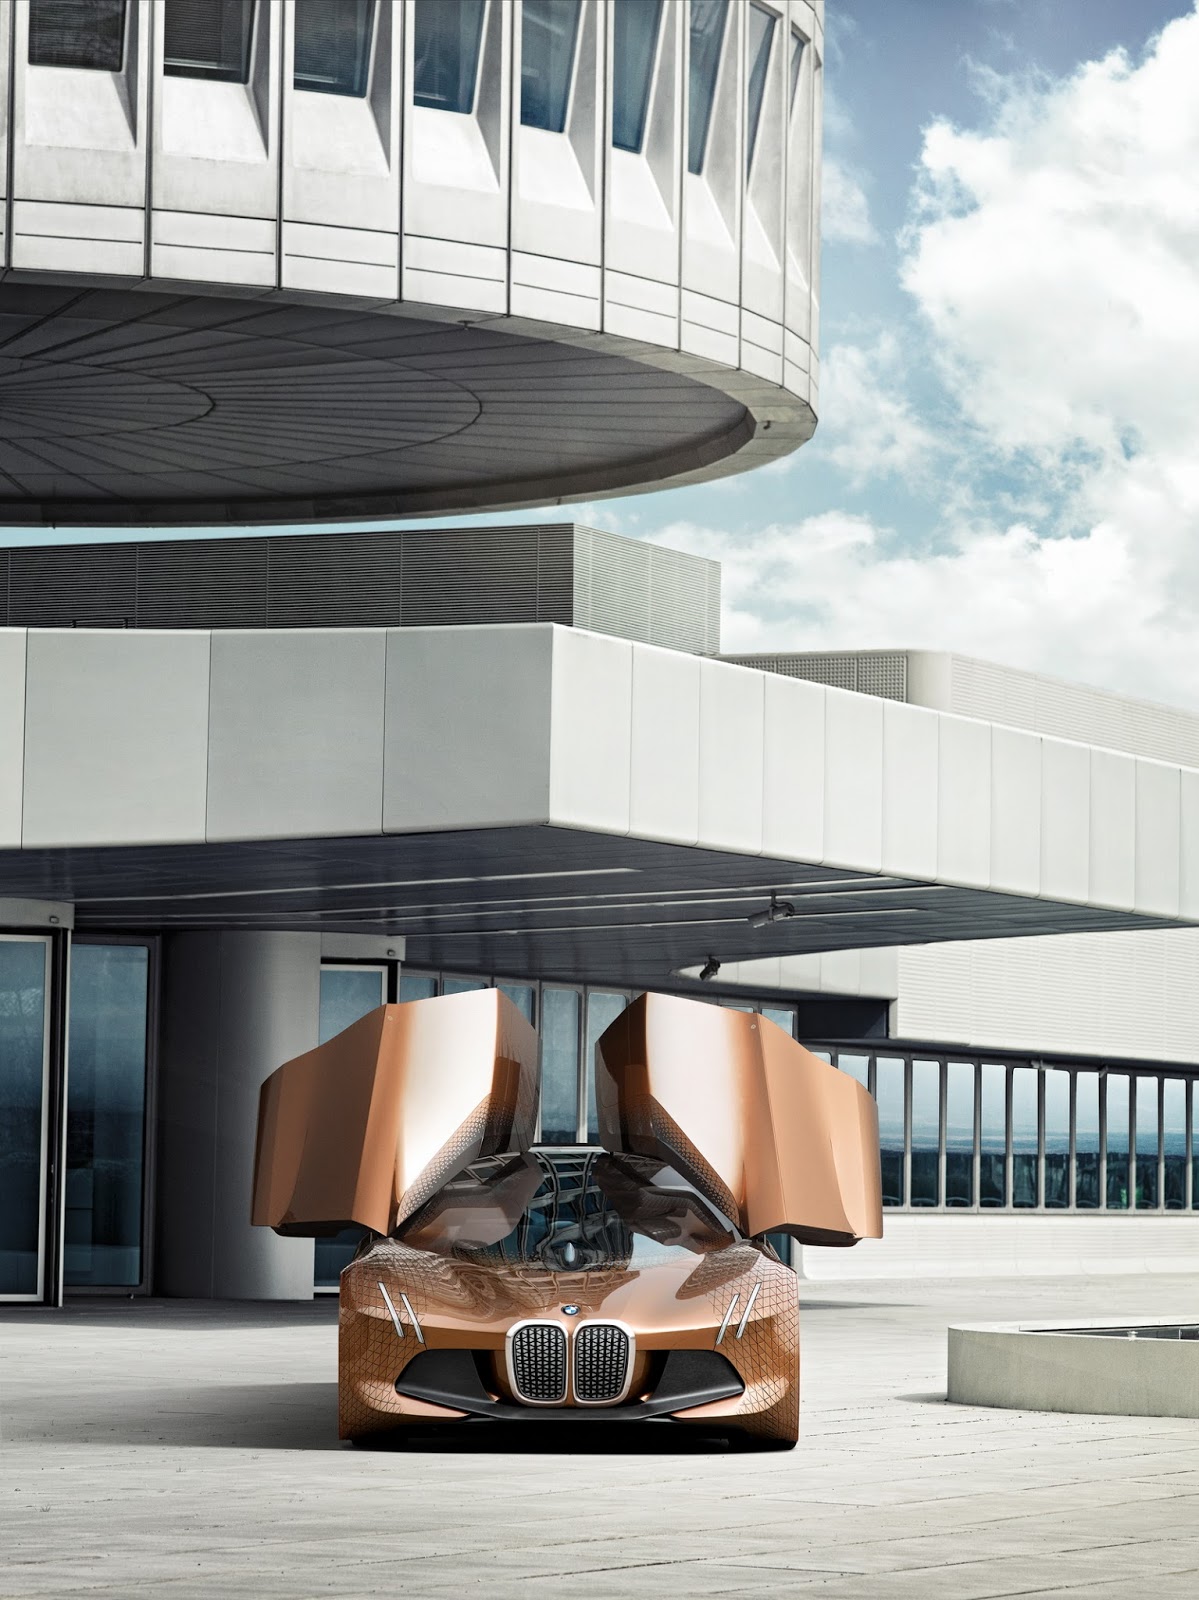 
Phần thân vỏ của BMW Vision Next 100 là sự kết hợp giữa hai chất liệu nhựa và sợi carbon. Một số tấm ốp thân vỏ được làm từ phần thừa của quá trình sản xuất sợi carbon.
